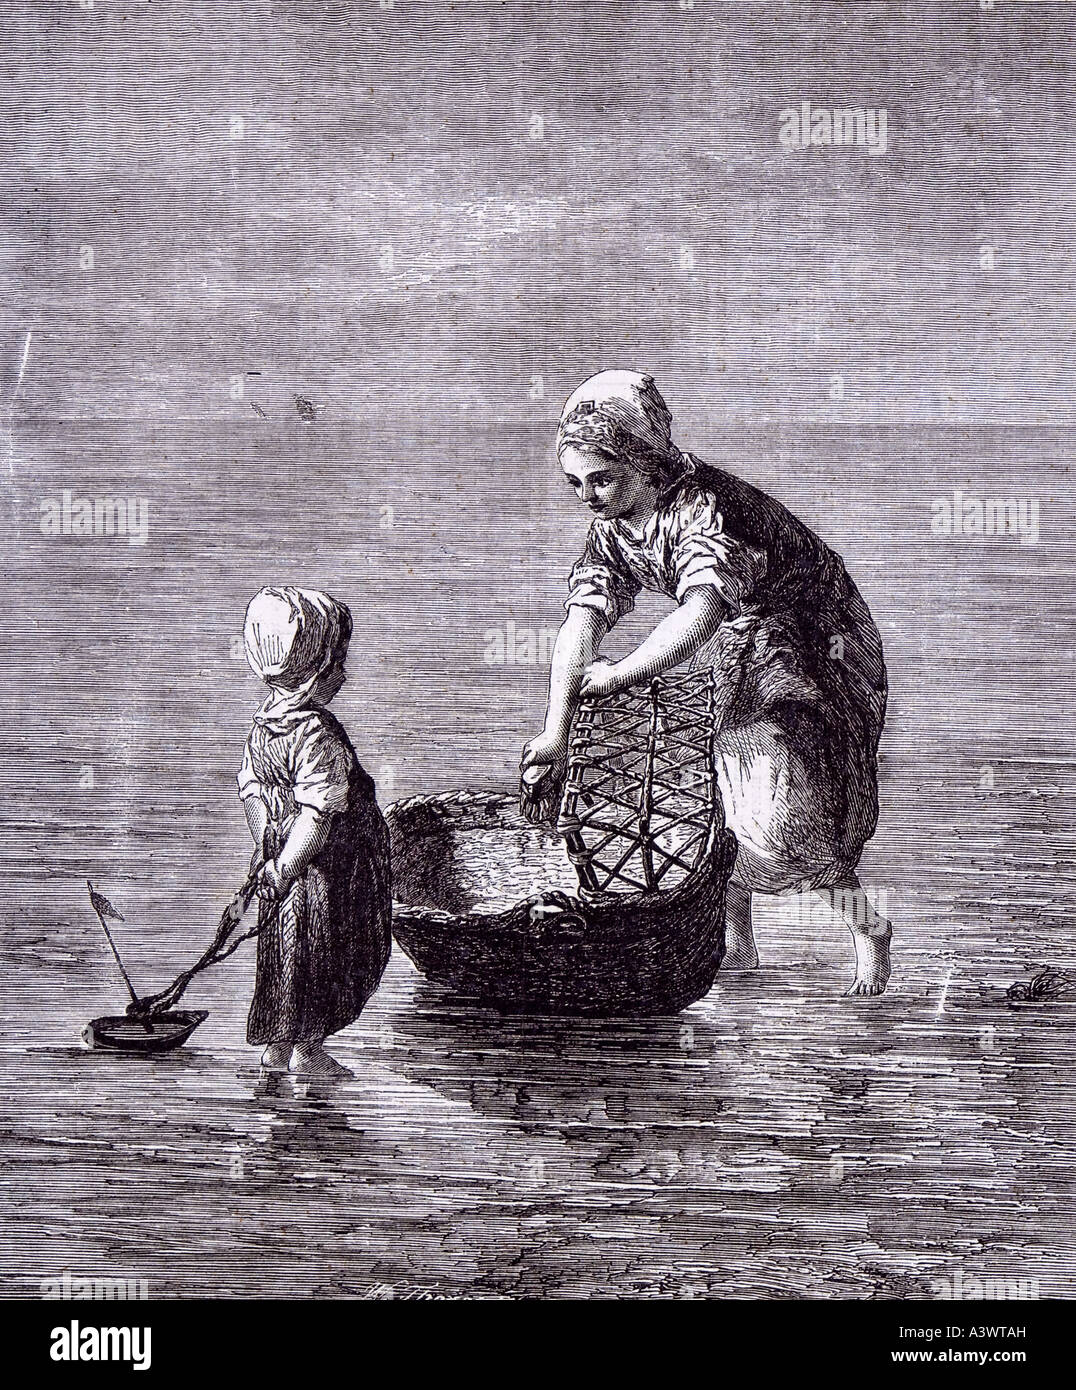 L'artista olandese figlio d'arte sorella barca mare Mosè carrello lettino baby cot babyhood presepe Foto Stock